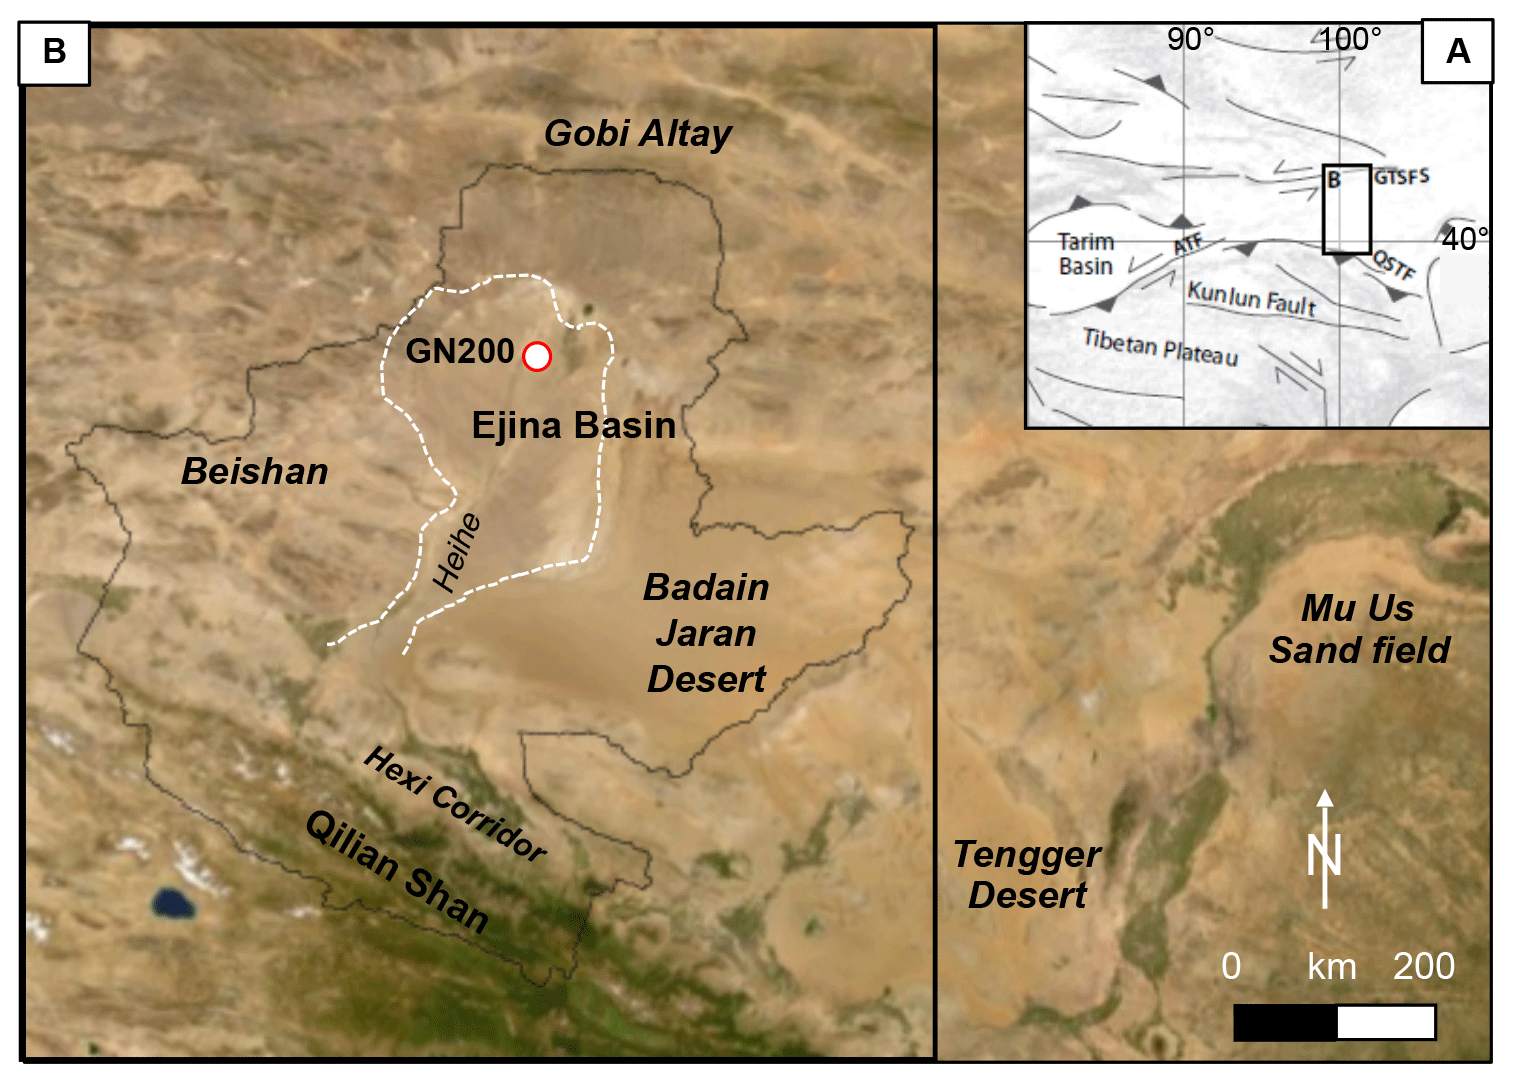 gobi desert map